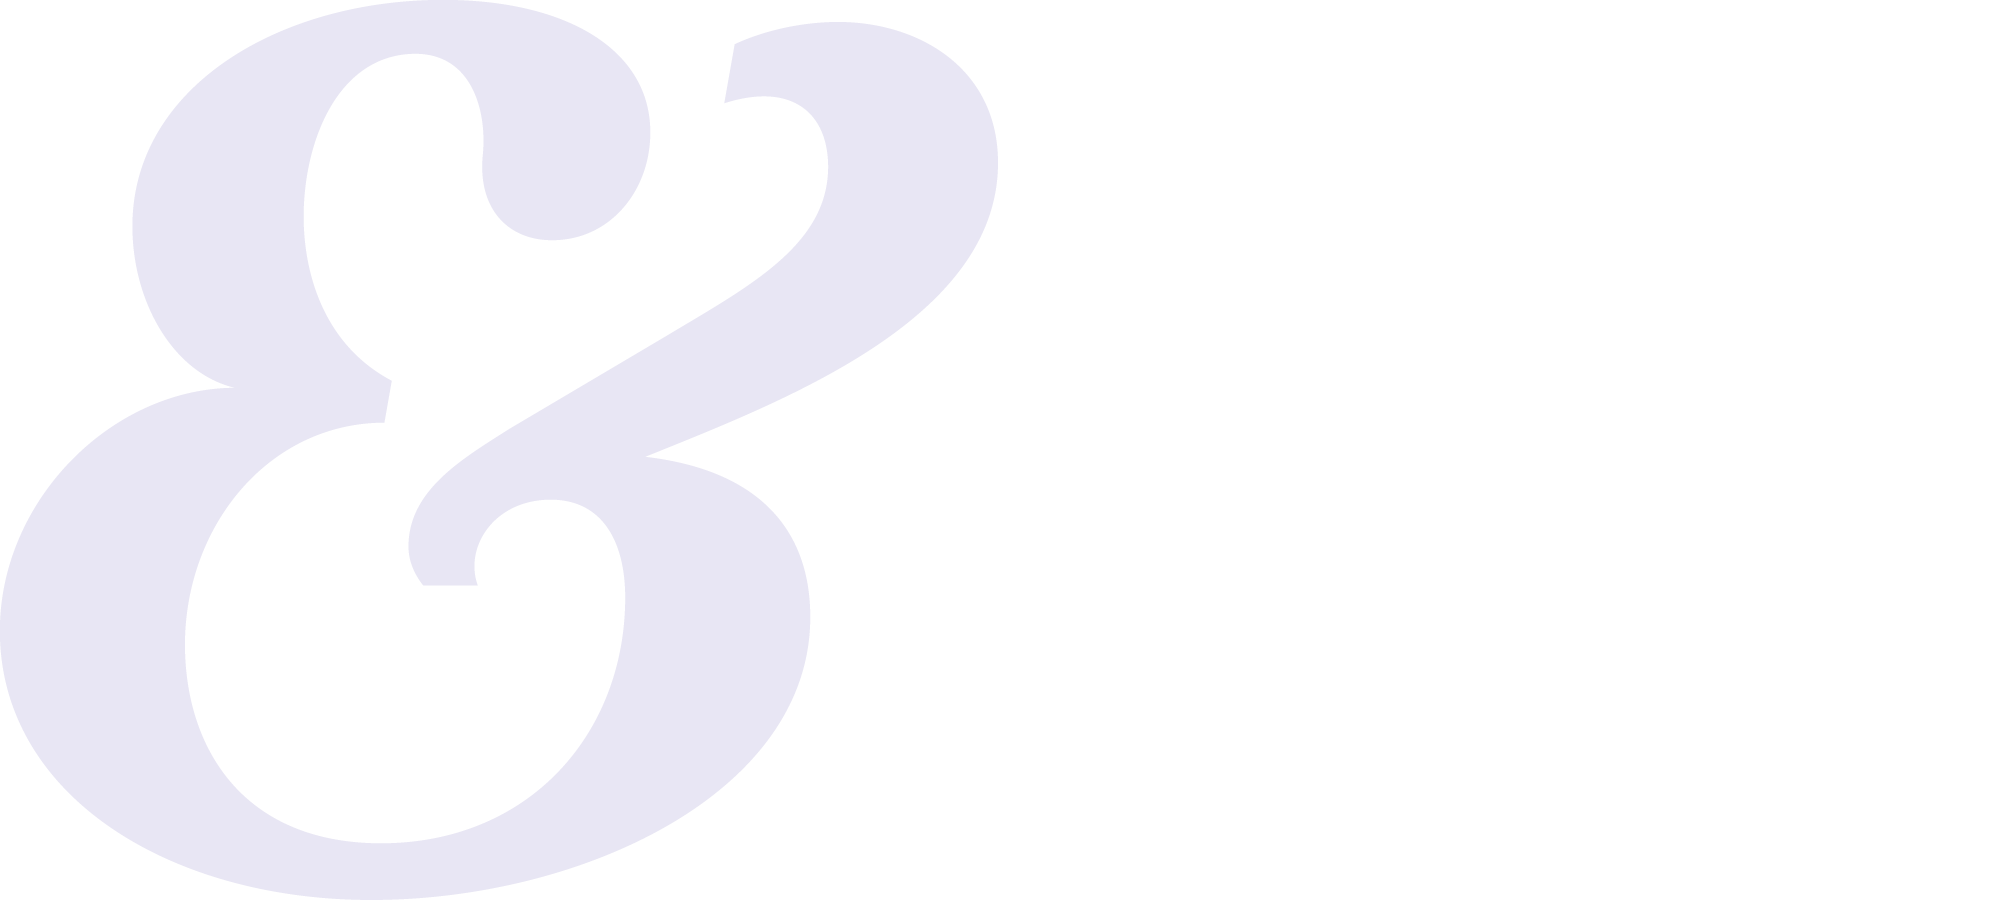 EDI logo